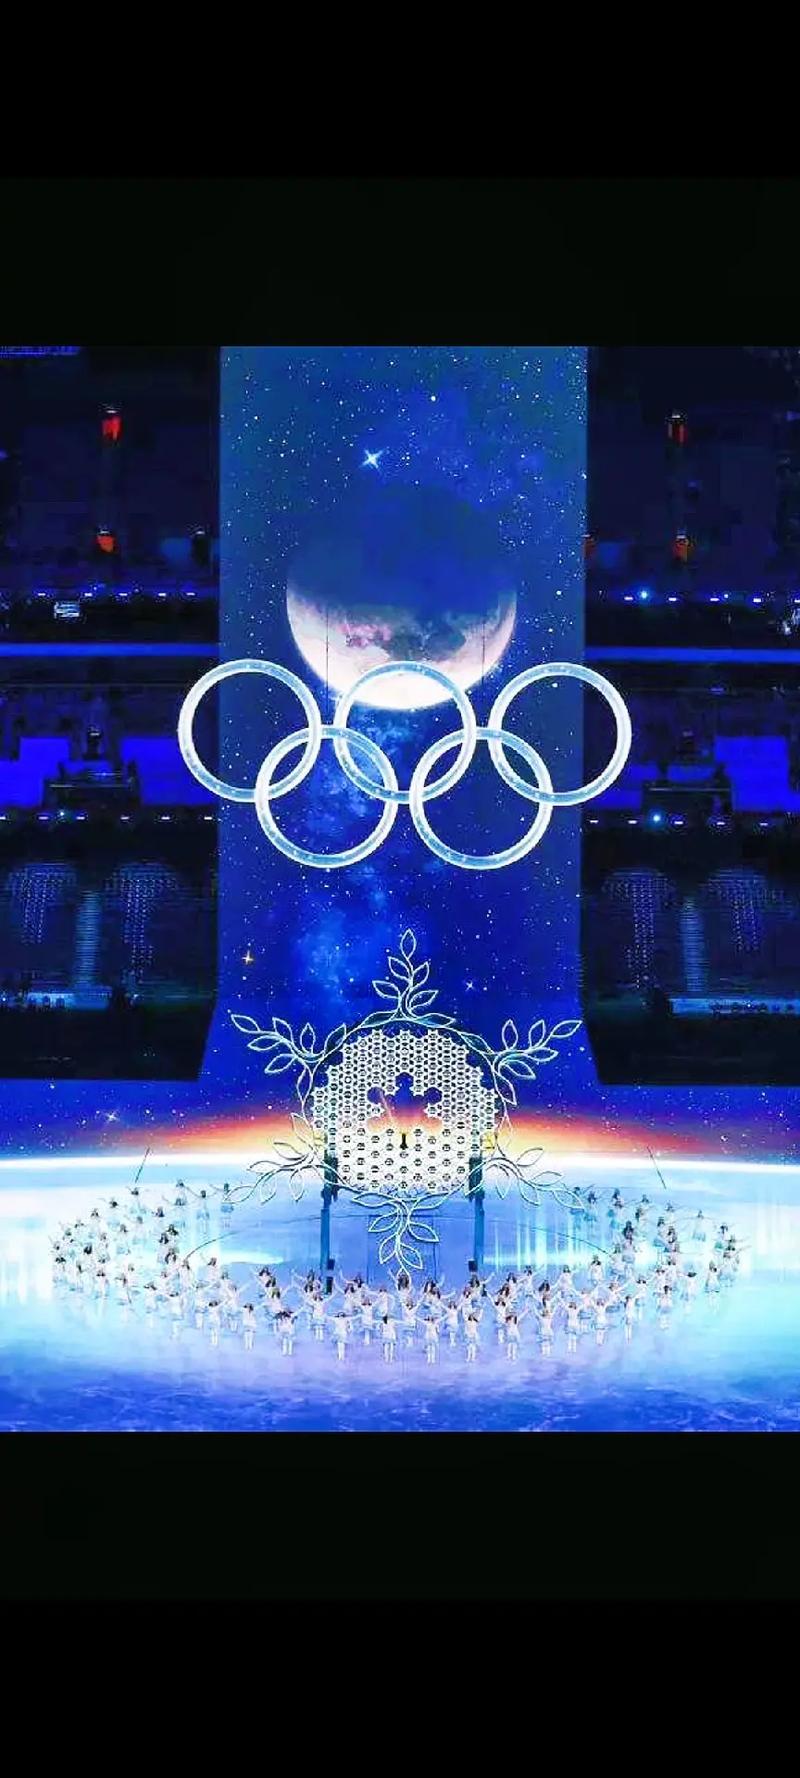 北京冬奥会开幕式回顾讲解